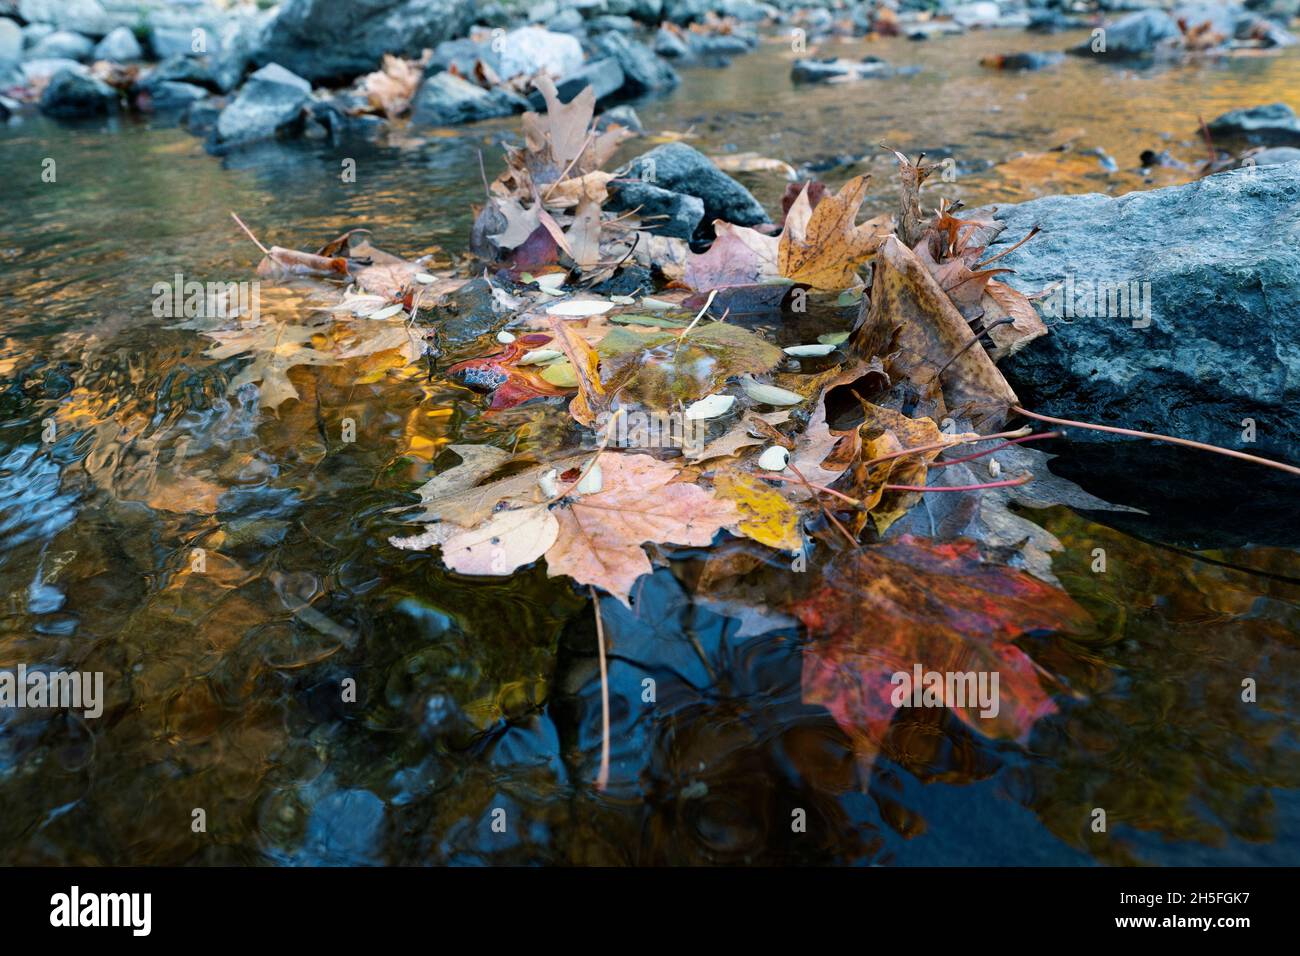 Autunno, foglie di caduta galleggianti sull'acqua, colori di caduta, foglie di acero Foto Stock